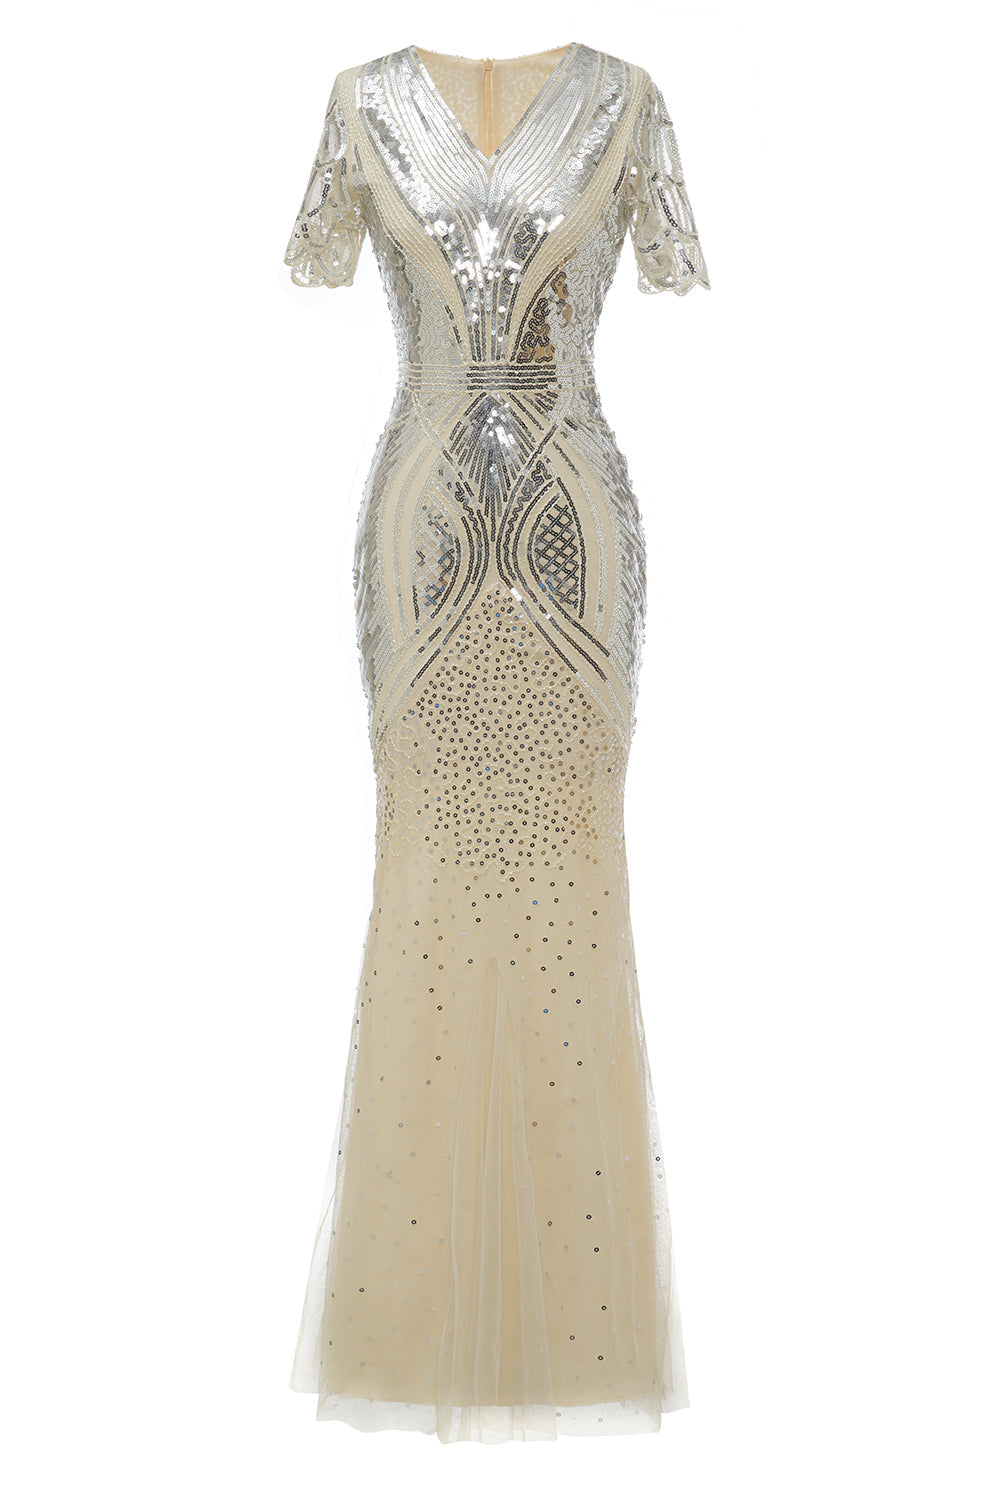 Morelowe Królewska Długie Sukienki Lata 20 z Cekinami